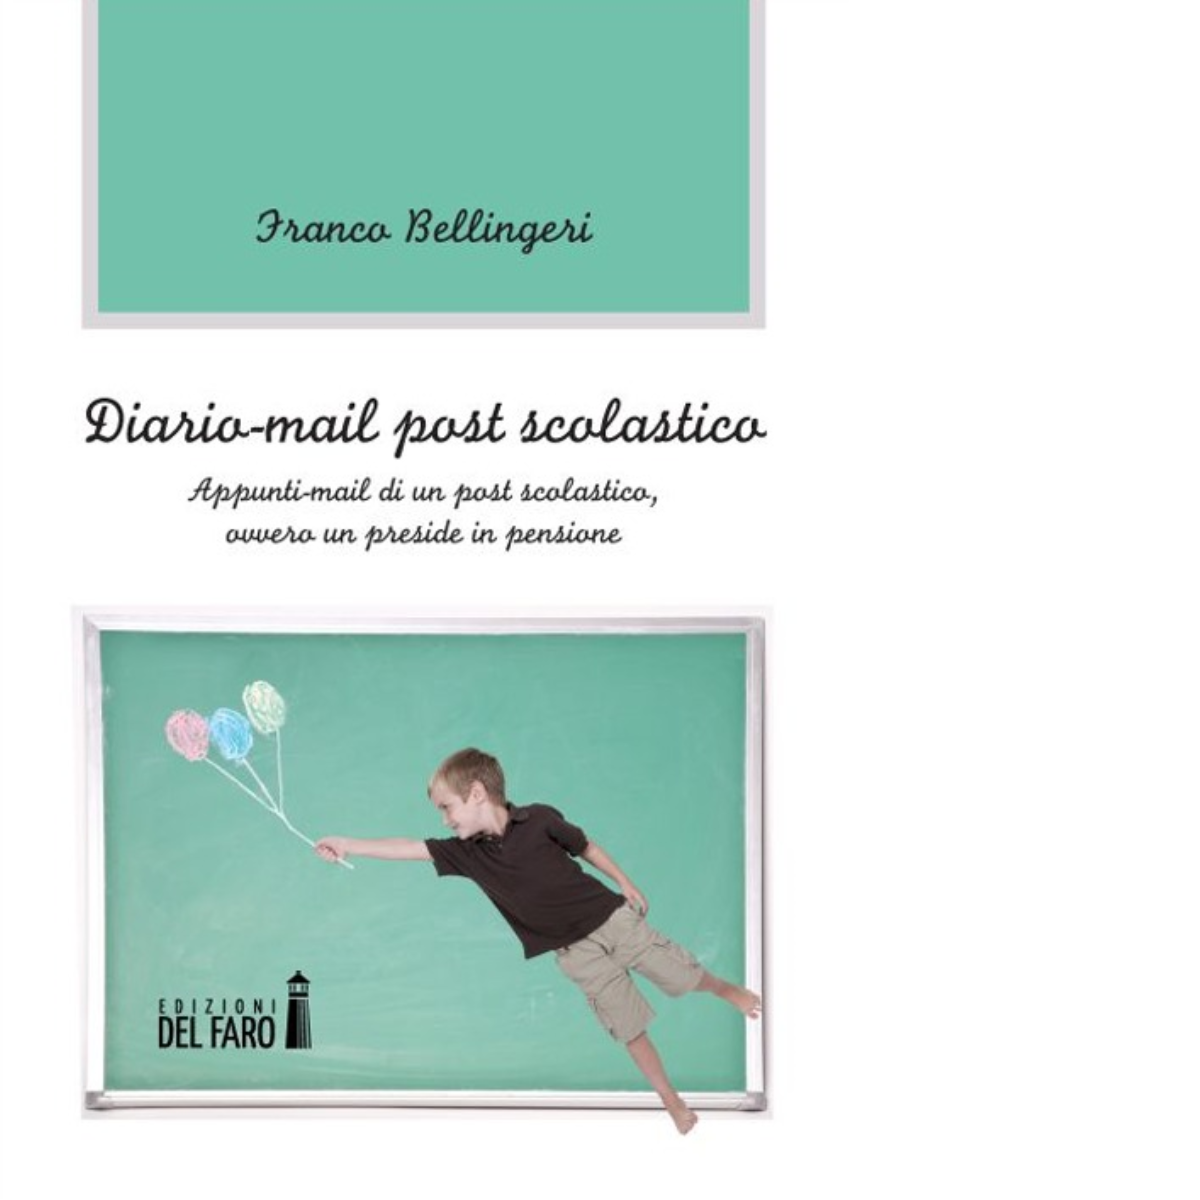 Diario-mail post scolastico di Bellingeri Franco - Edizioni Del Faro, 2013